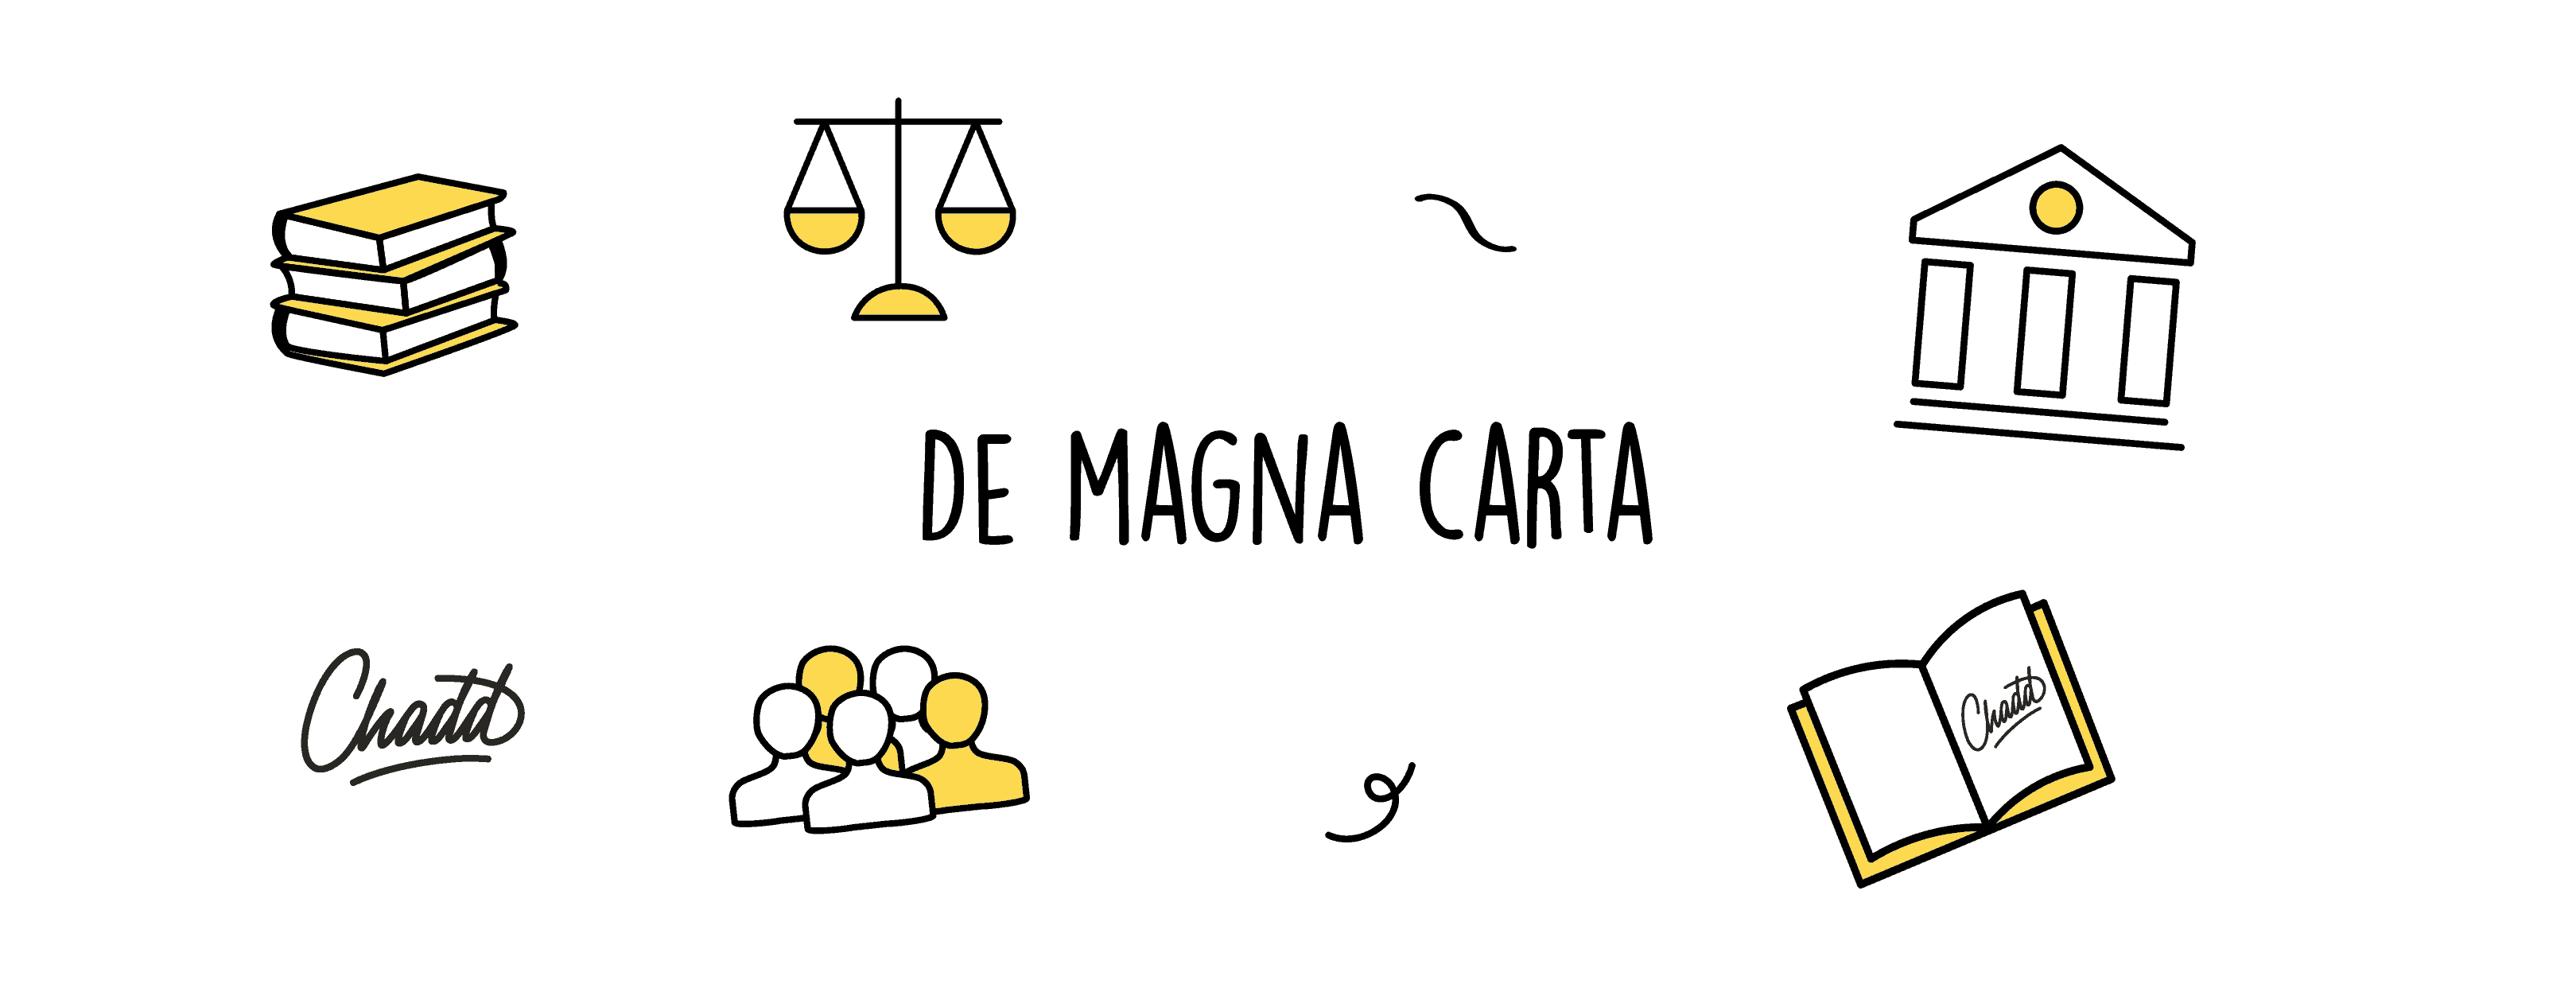 De Magna Carta